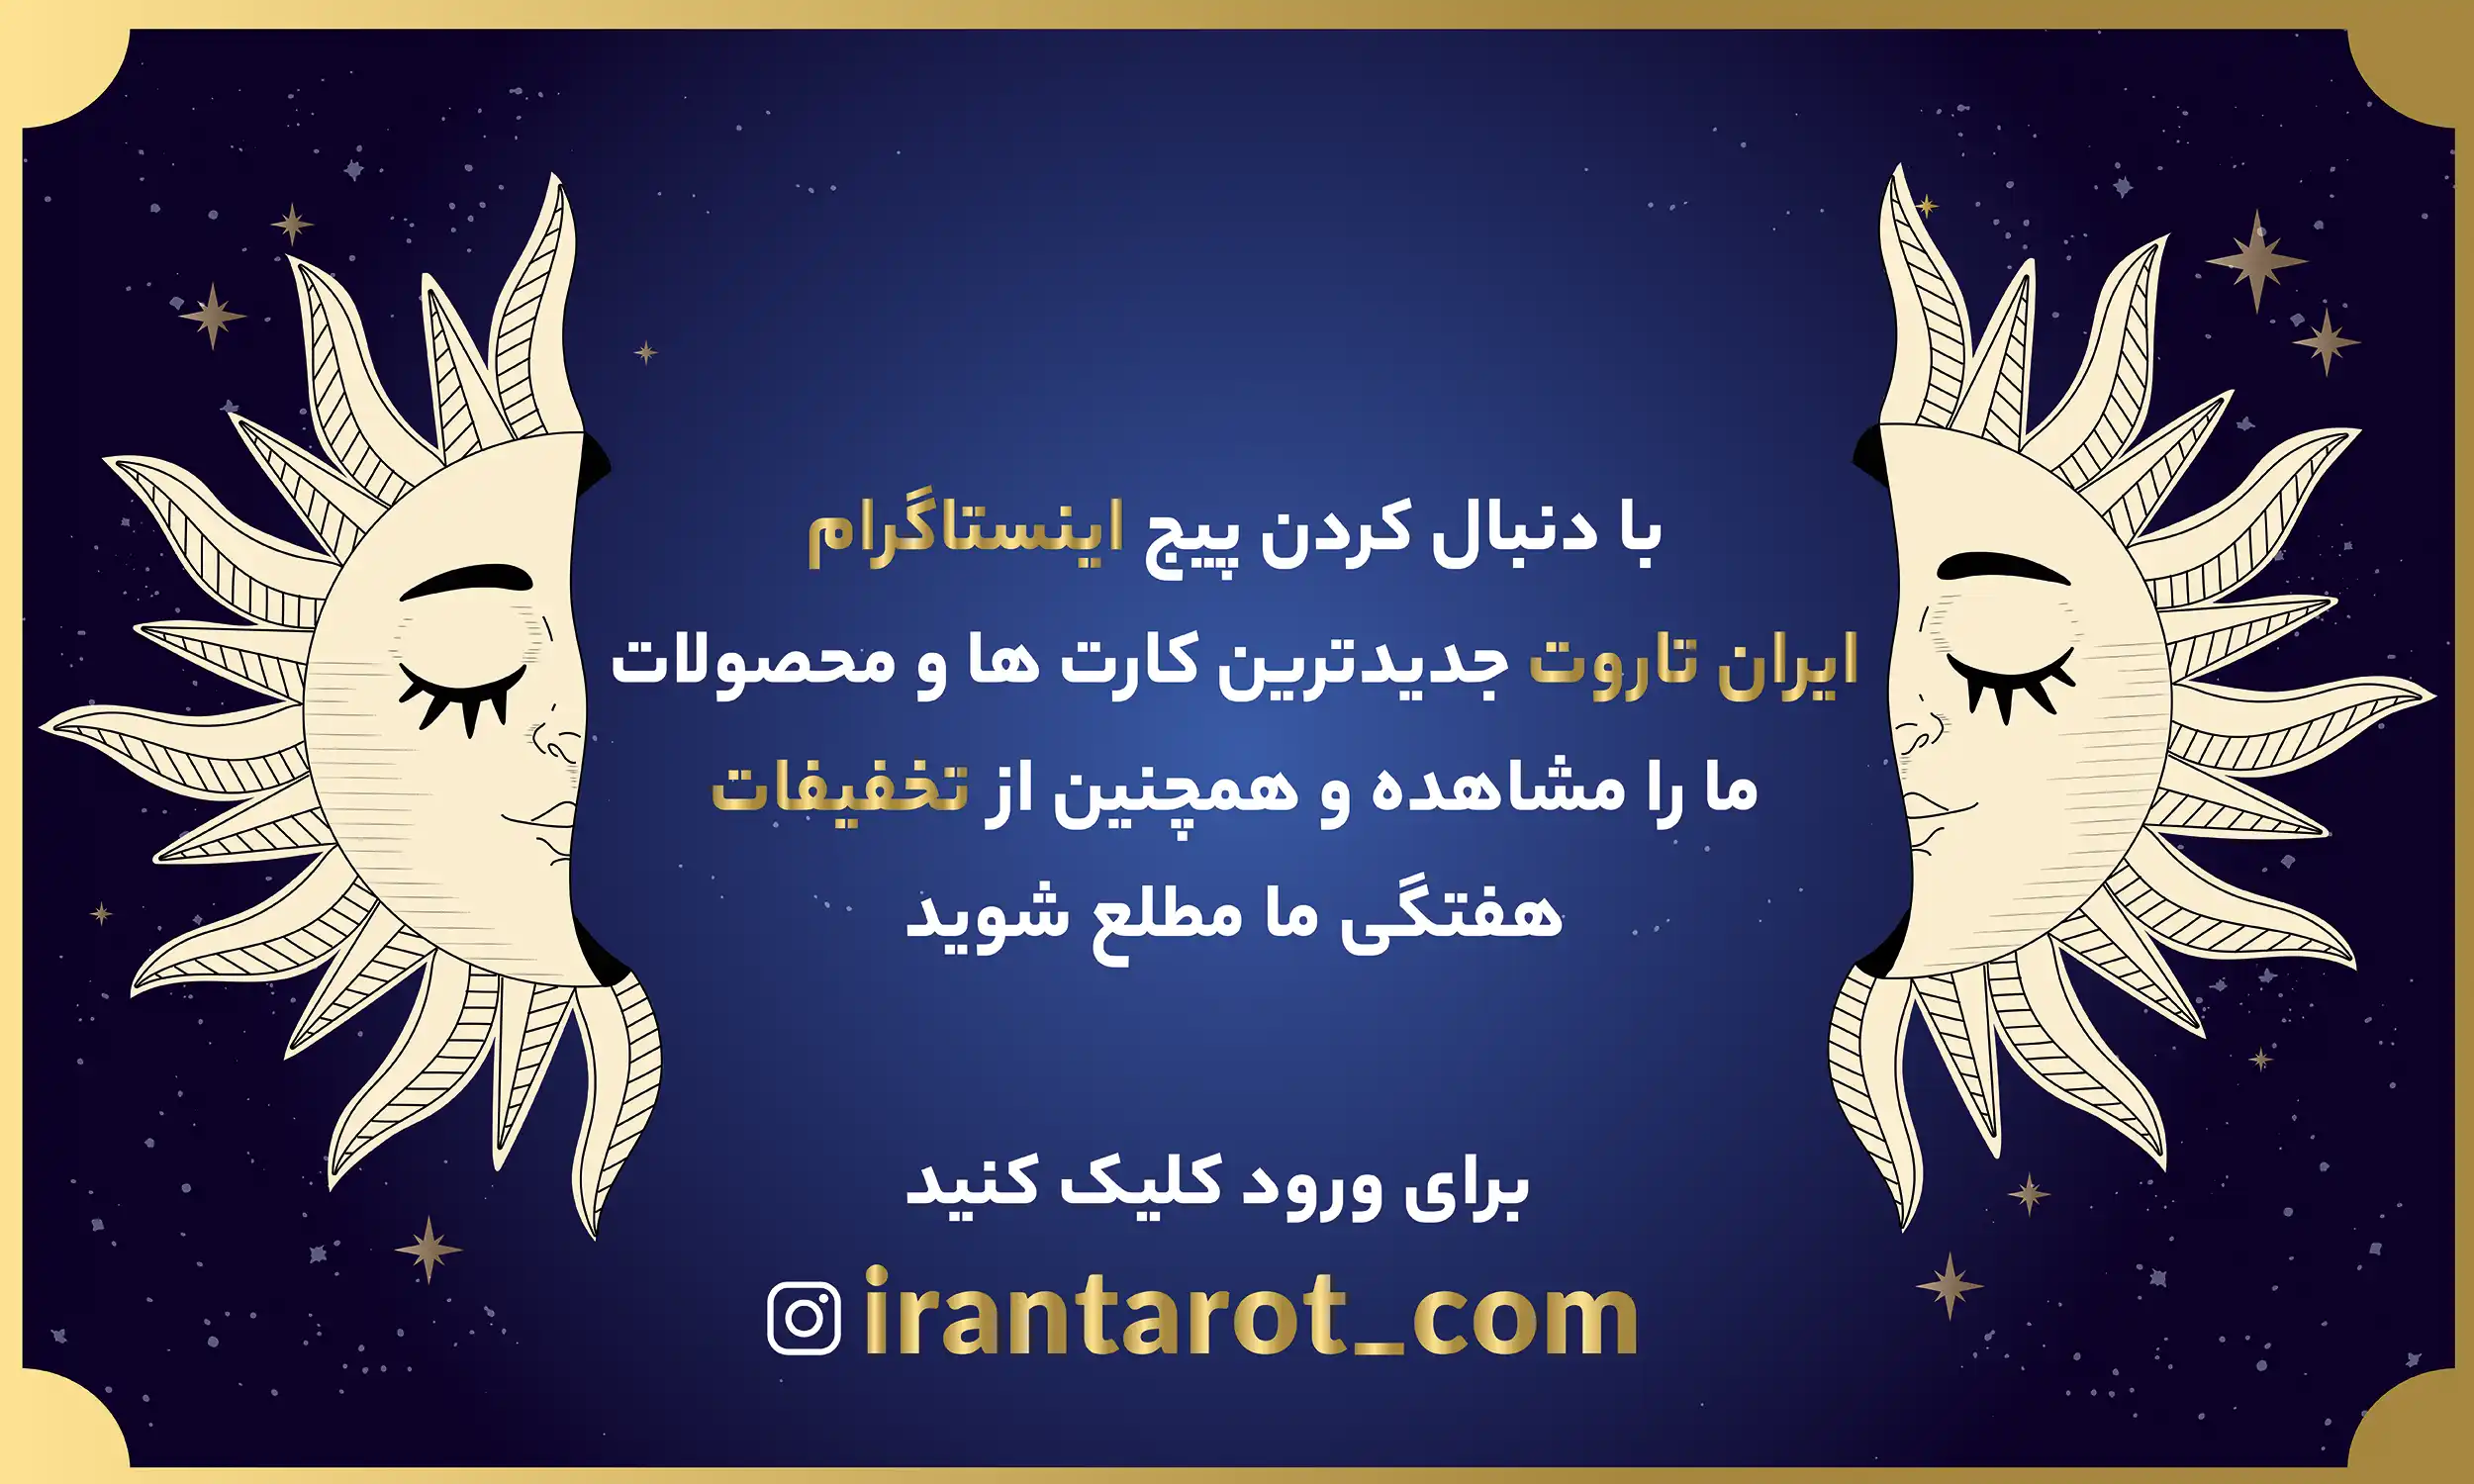 اینستاگرام - ایران تاروت